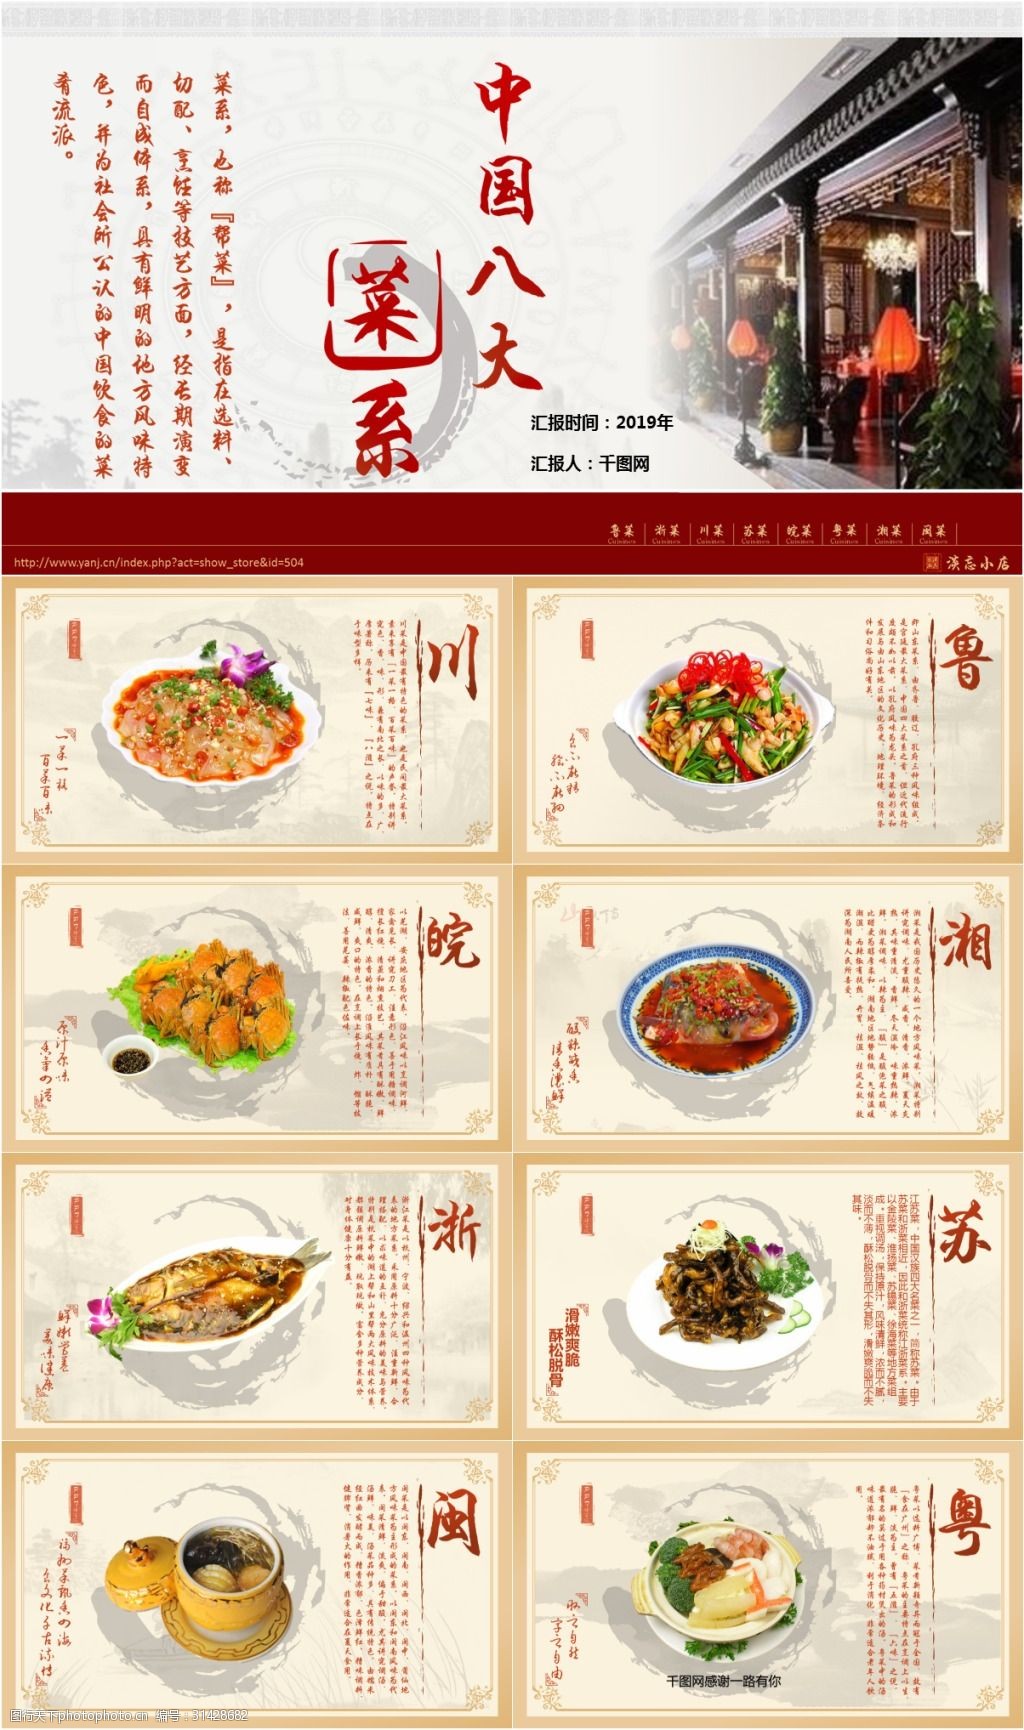 中国八大菜系产品介绍ppt模板免费下载